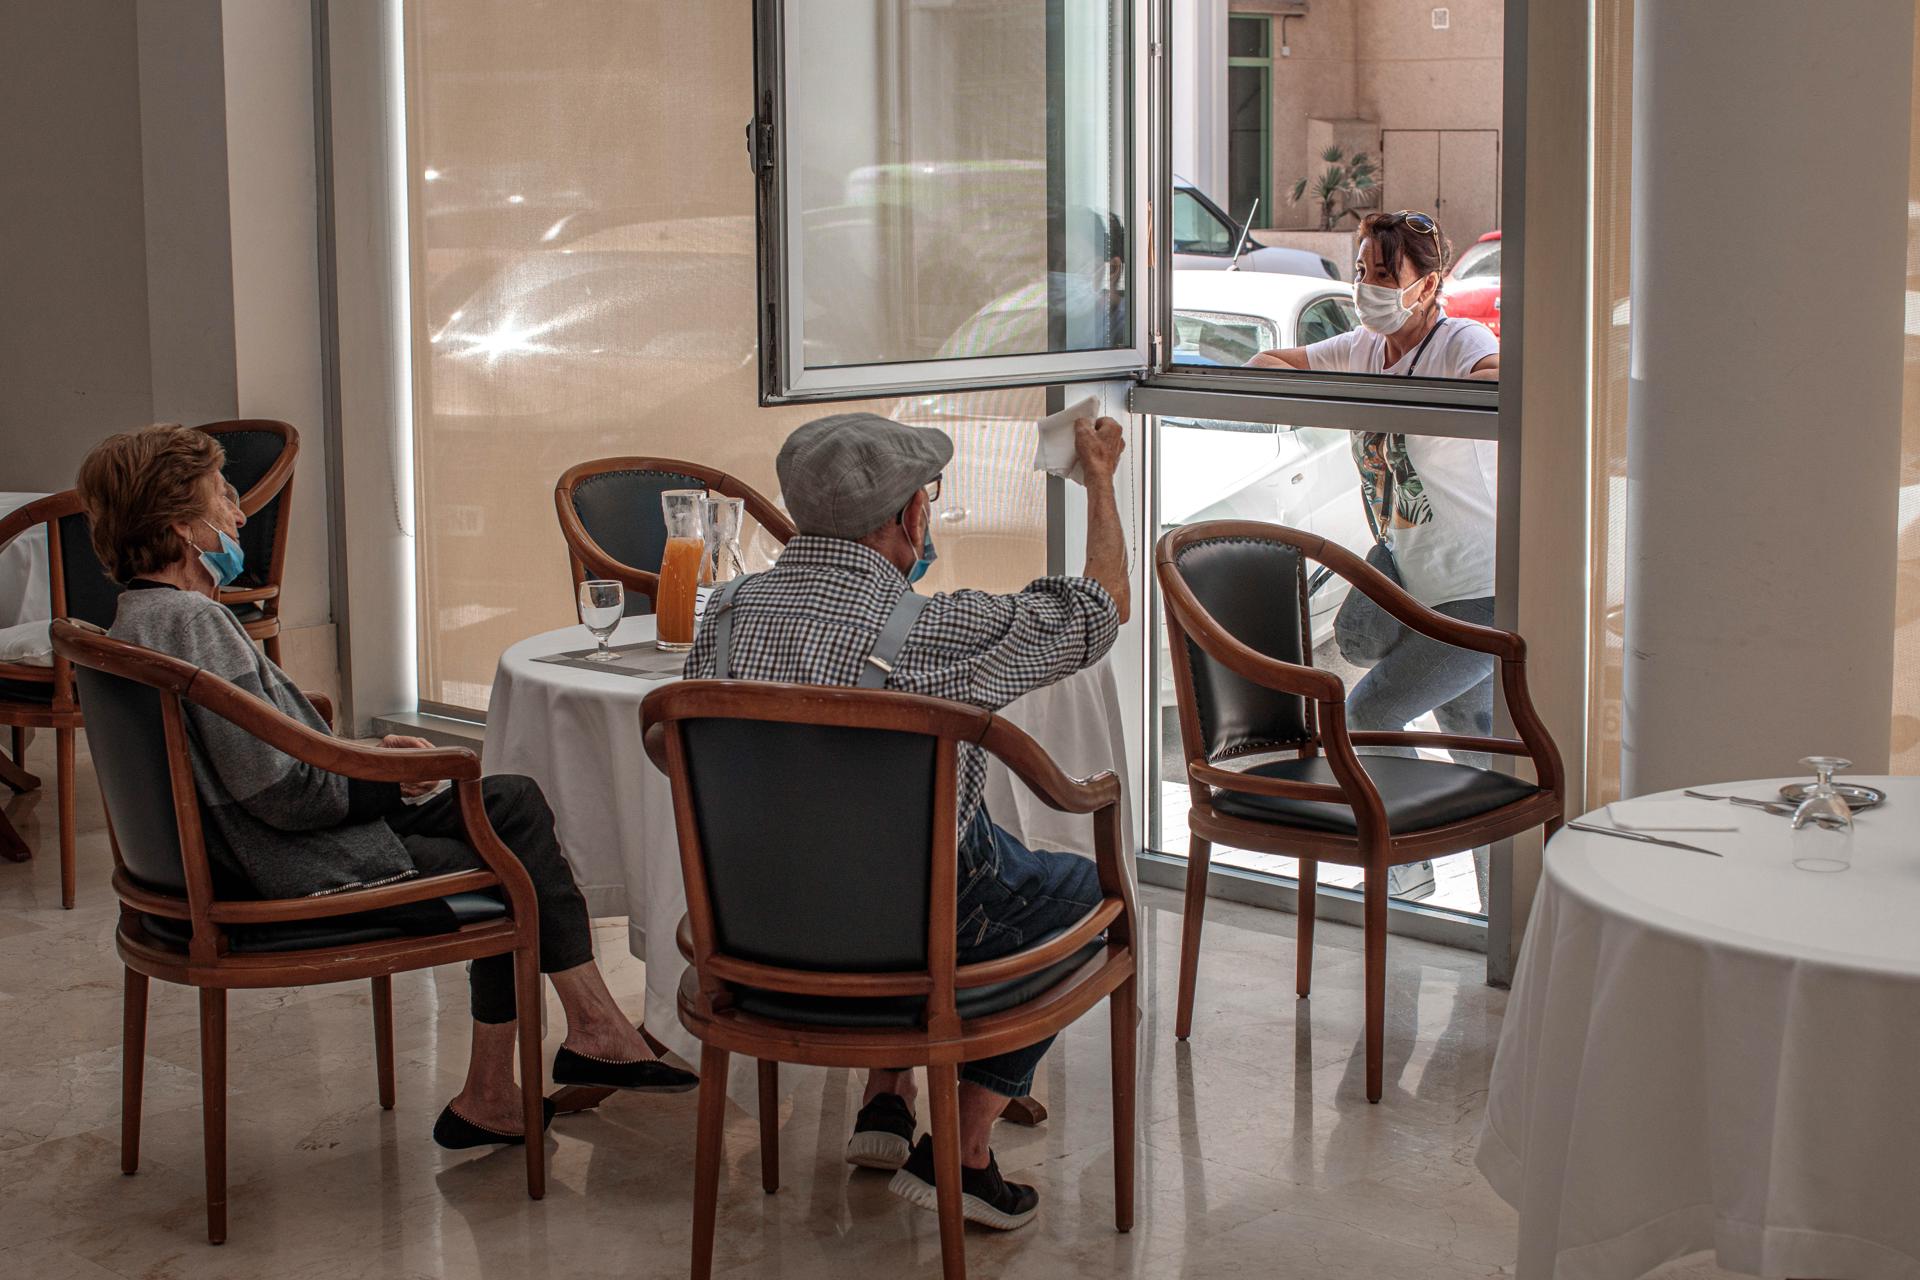 Una persona conversa con sus padres a través de una ventana habilitada en una residencia de mayores. Archivo/EFE/Biel Aliño